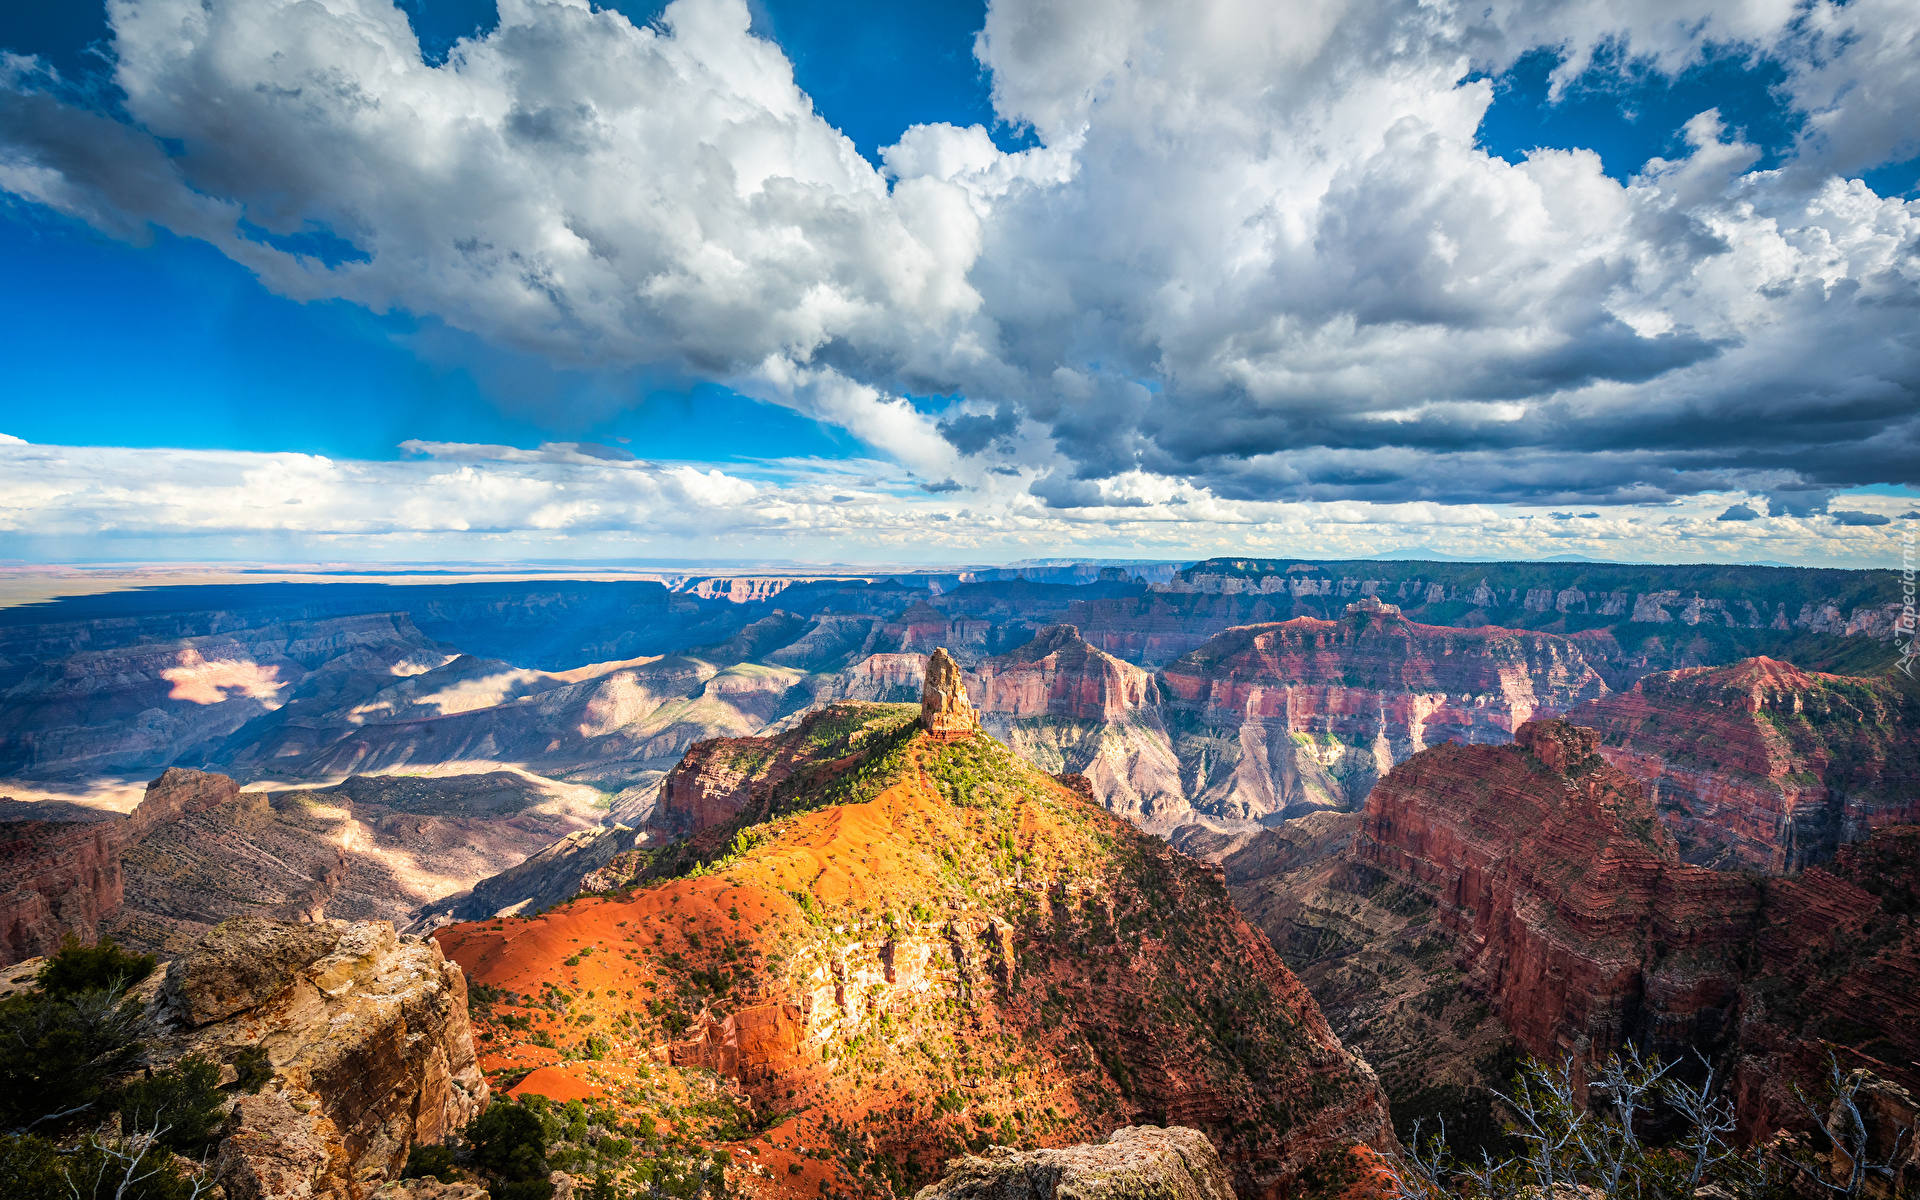 Park Narodowy Wielkiego Kanionu, Grand Canyon, Kanion, Skały, Arizona, Stany Zjednoczone